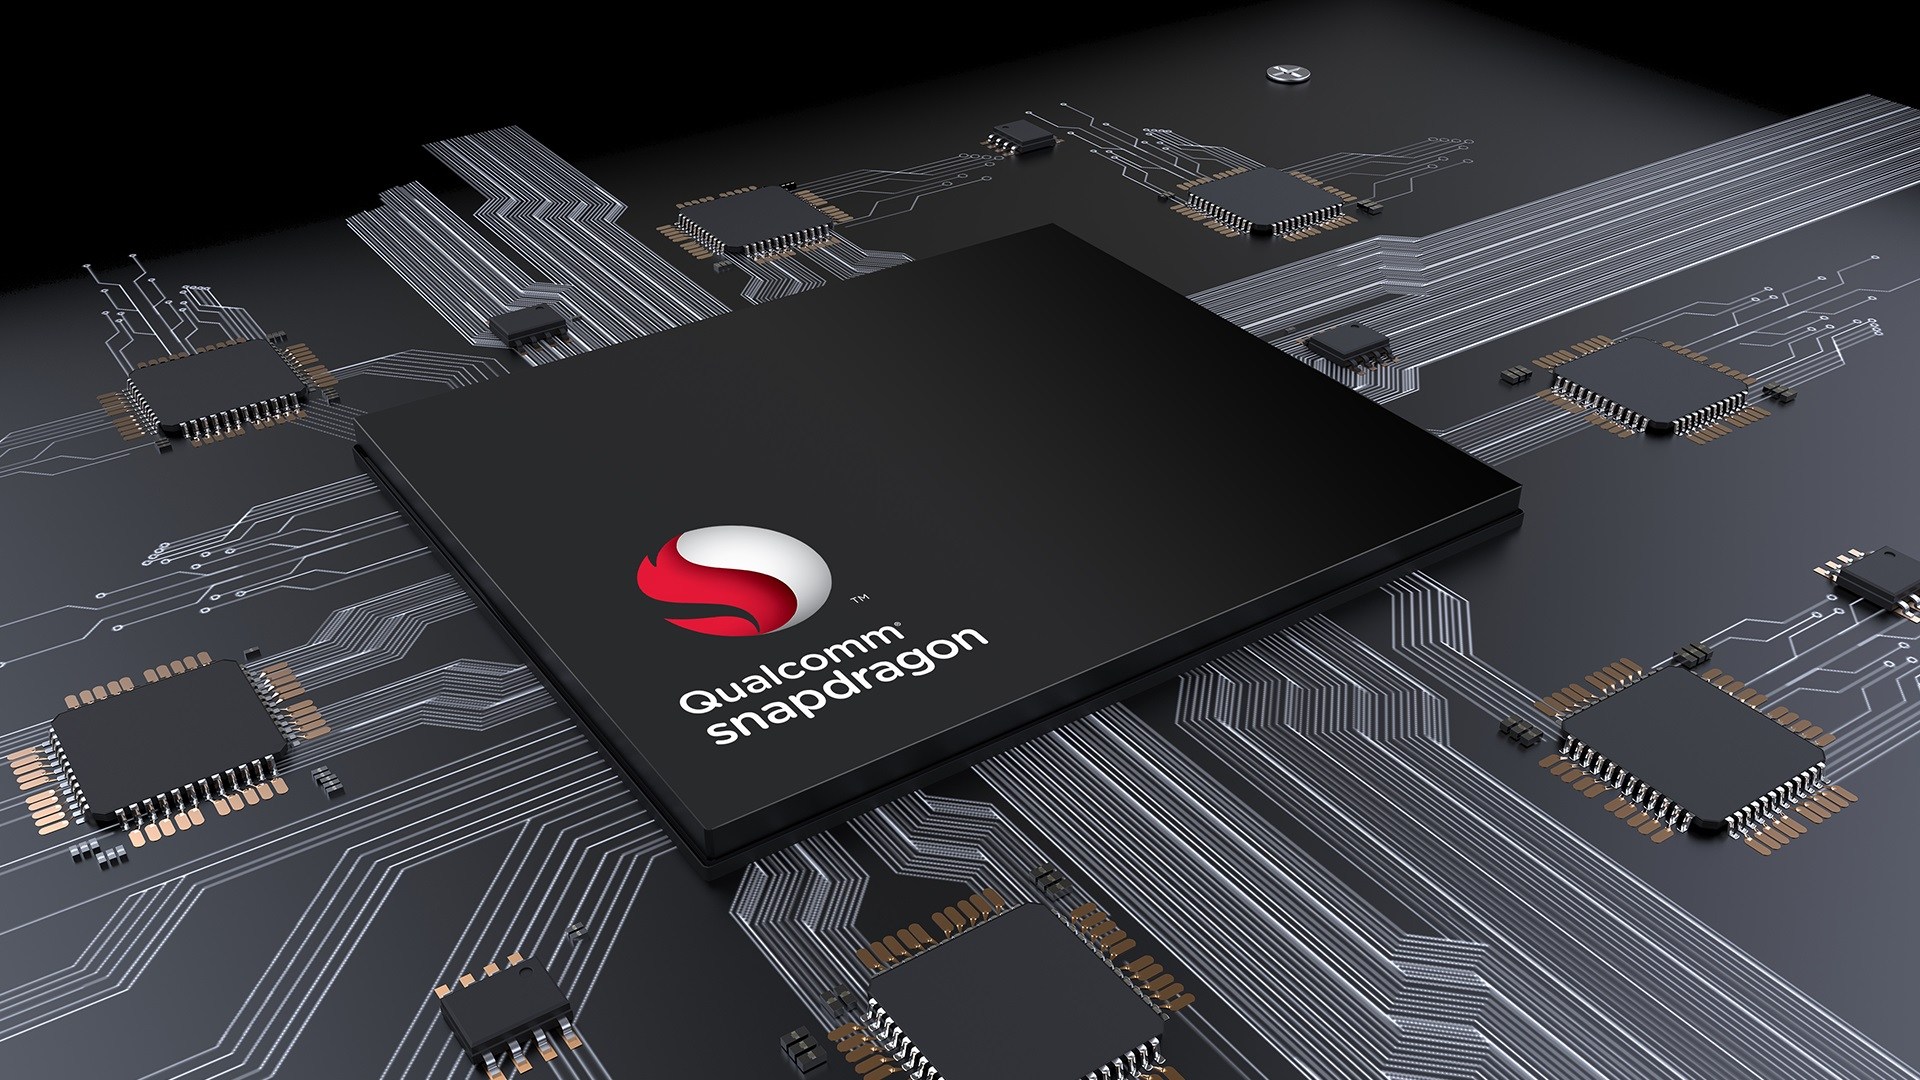 Qualcomm công bố 3 vi xử lý Snapdragon mới: 632, 439 và 429, mở rộng cho các dòng tầm trung và cao cấp